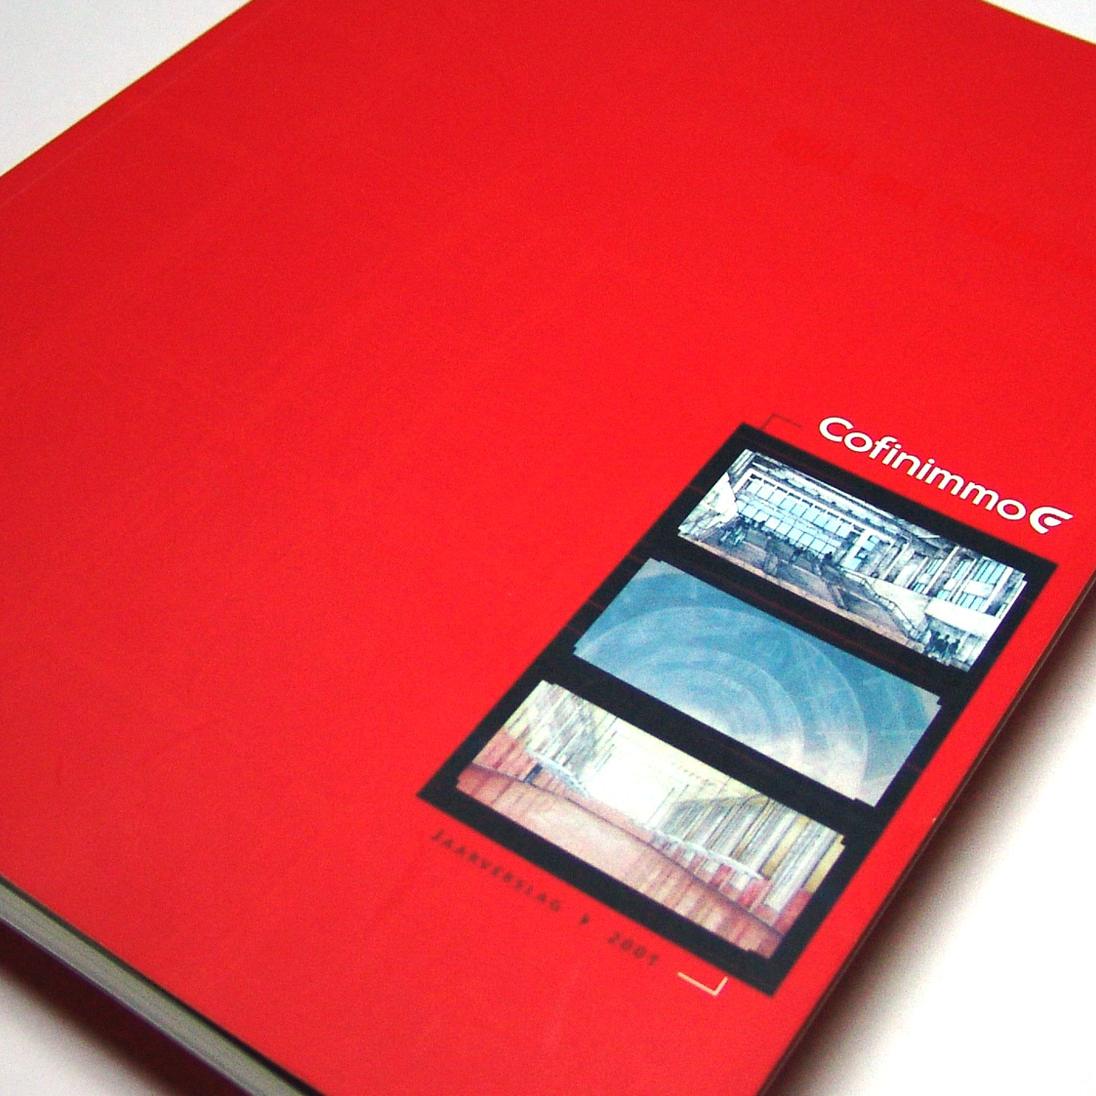 Cofinimmo - Annual Report 2001